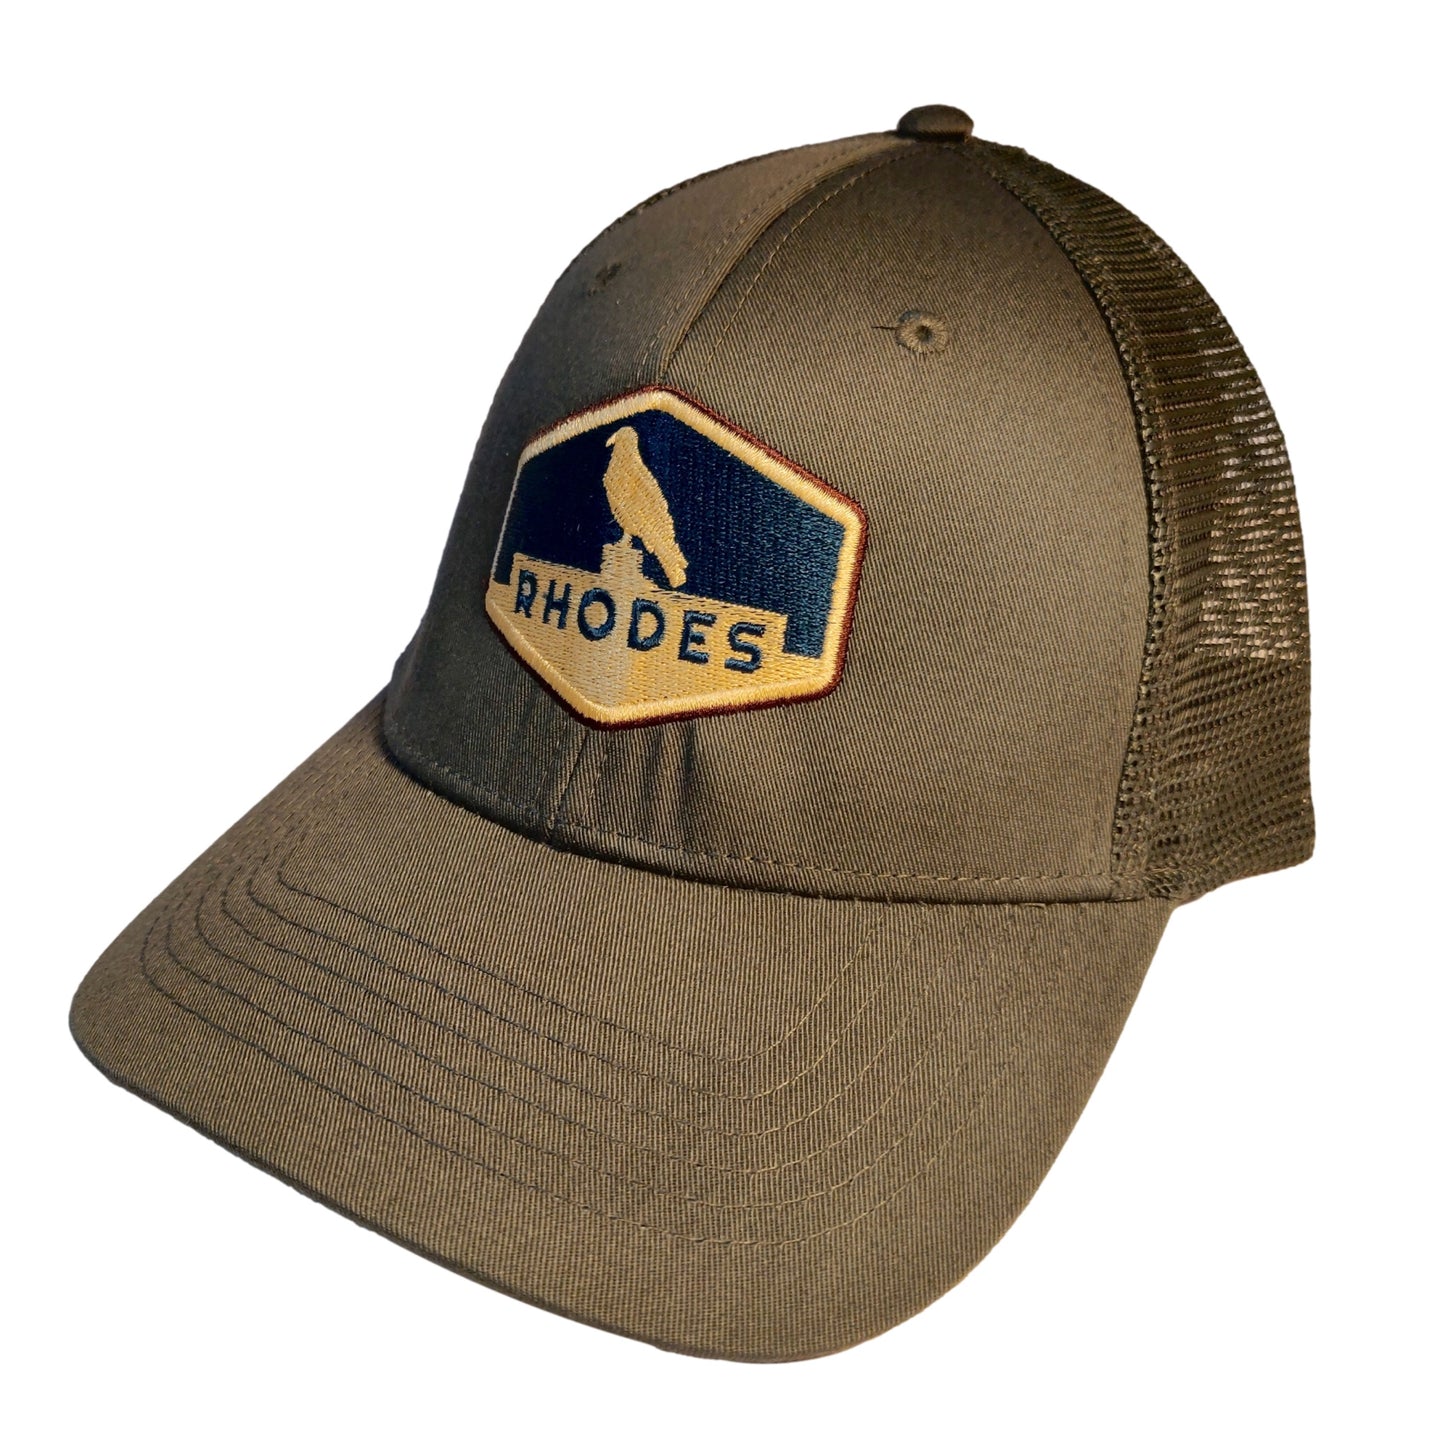 Rhodes Trucker Hat